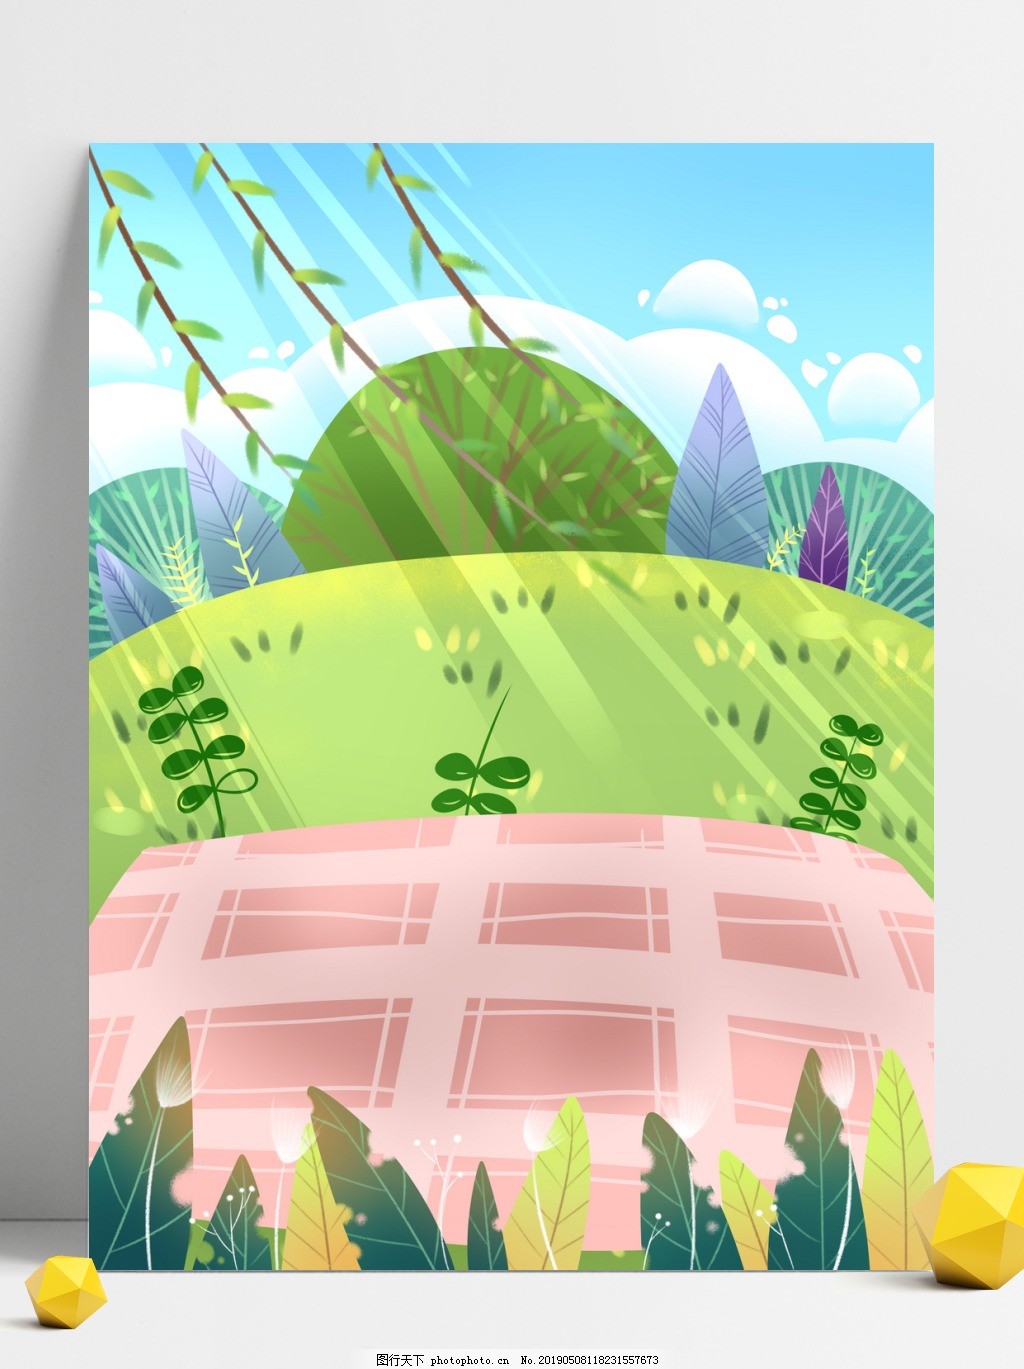 清新夏季野餐背景素材图片 广告背景 底纹边框 图行天下素材网